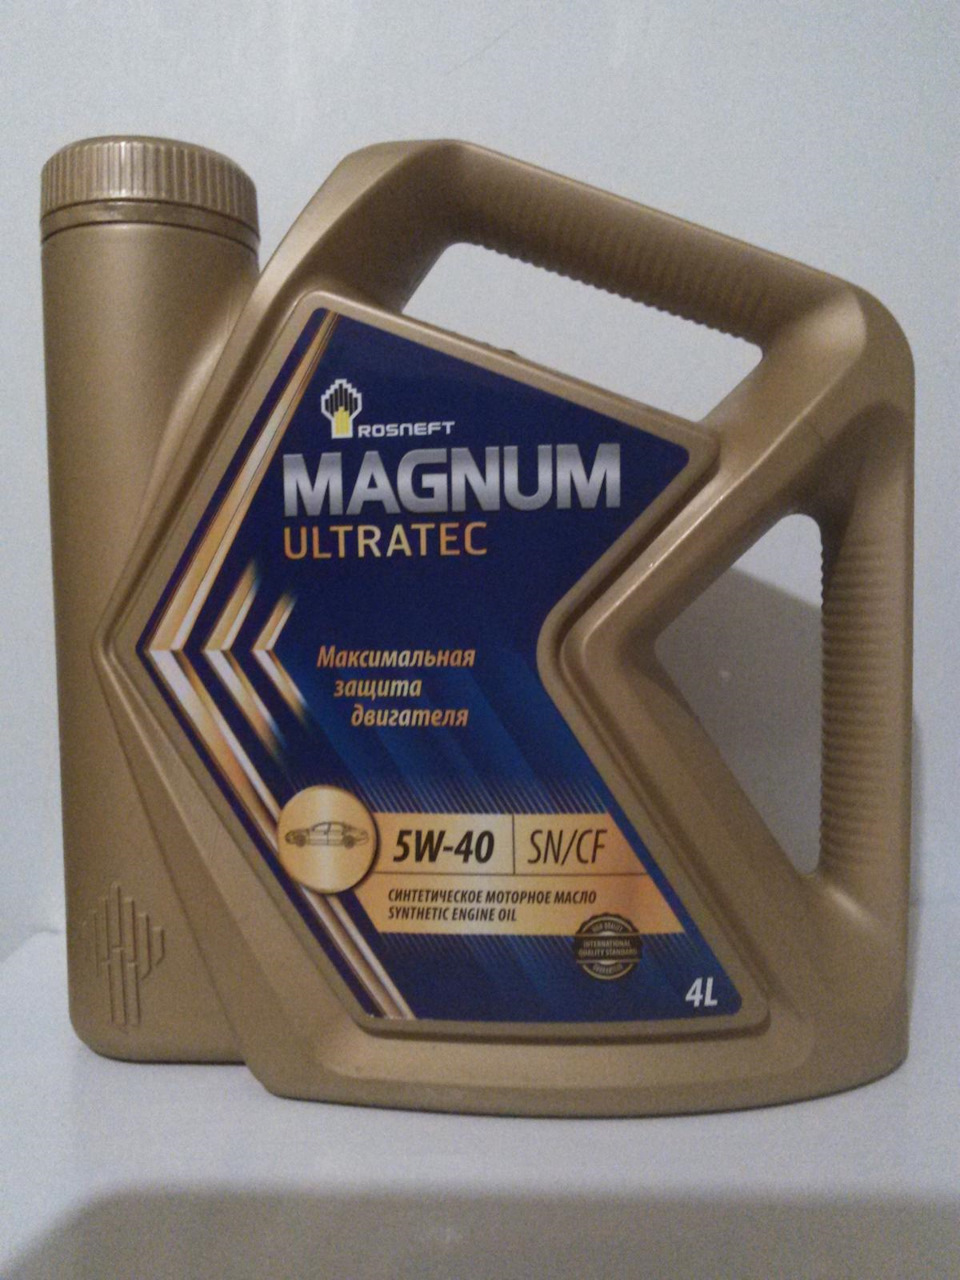 Обзор масла Роснефть Magnum Ultratec 5W-40 - тест, плюсы, минусы, отзывы, характеристики